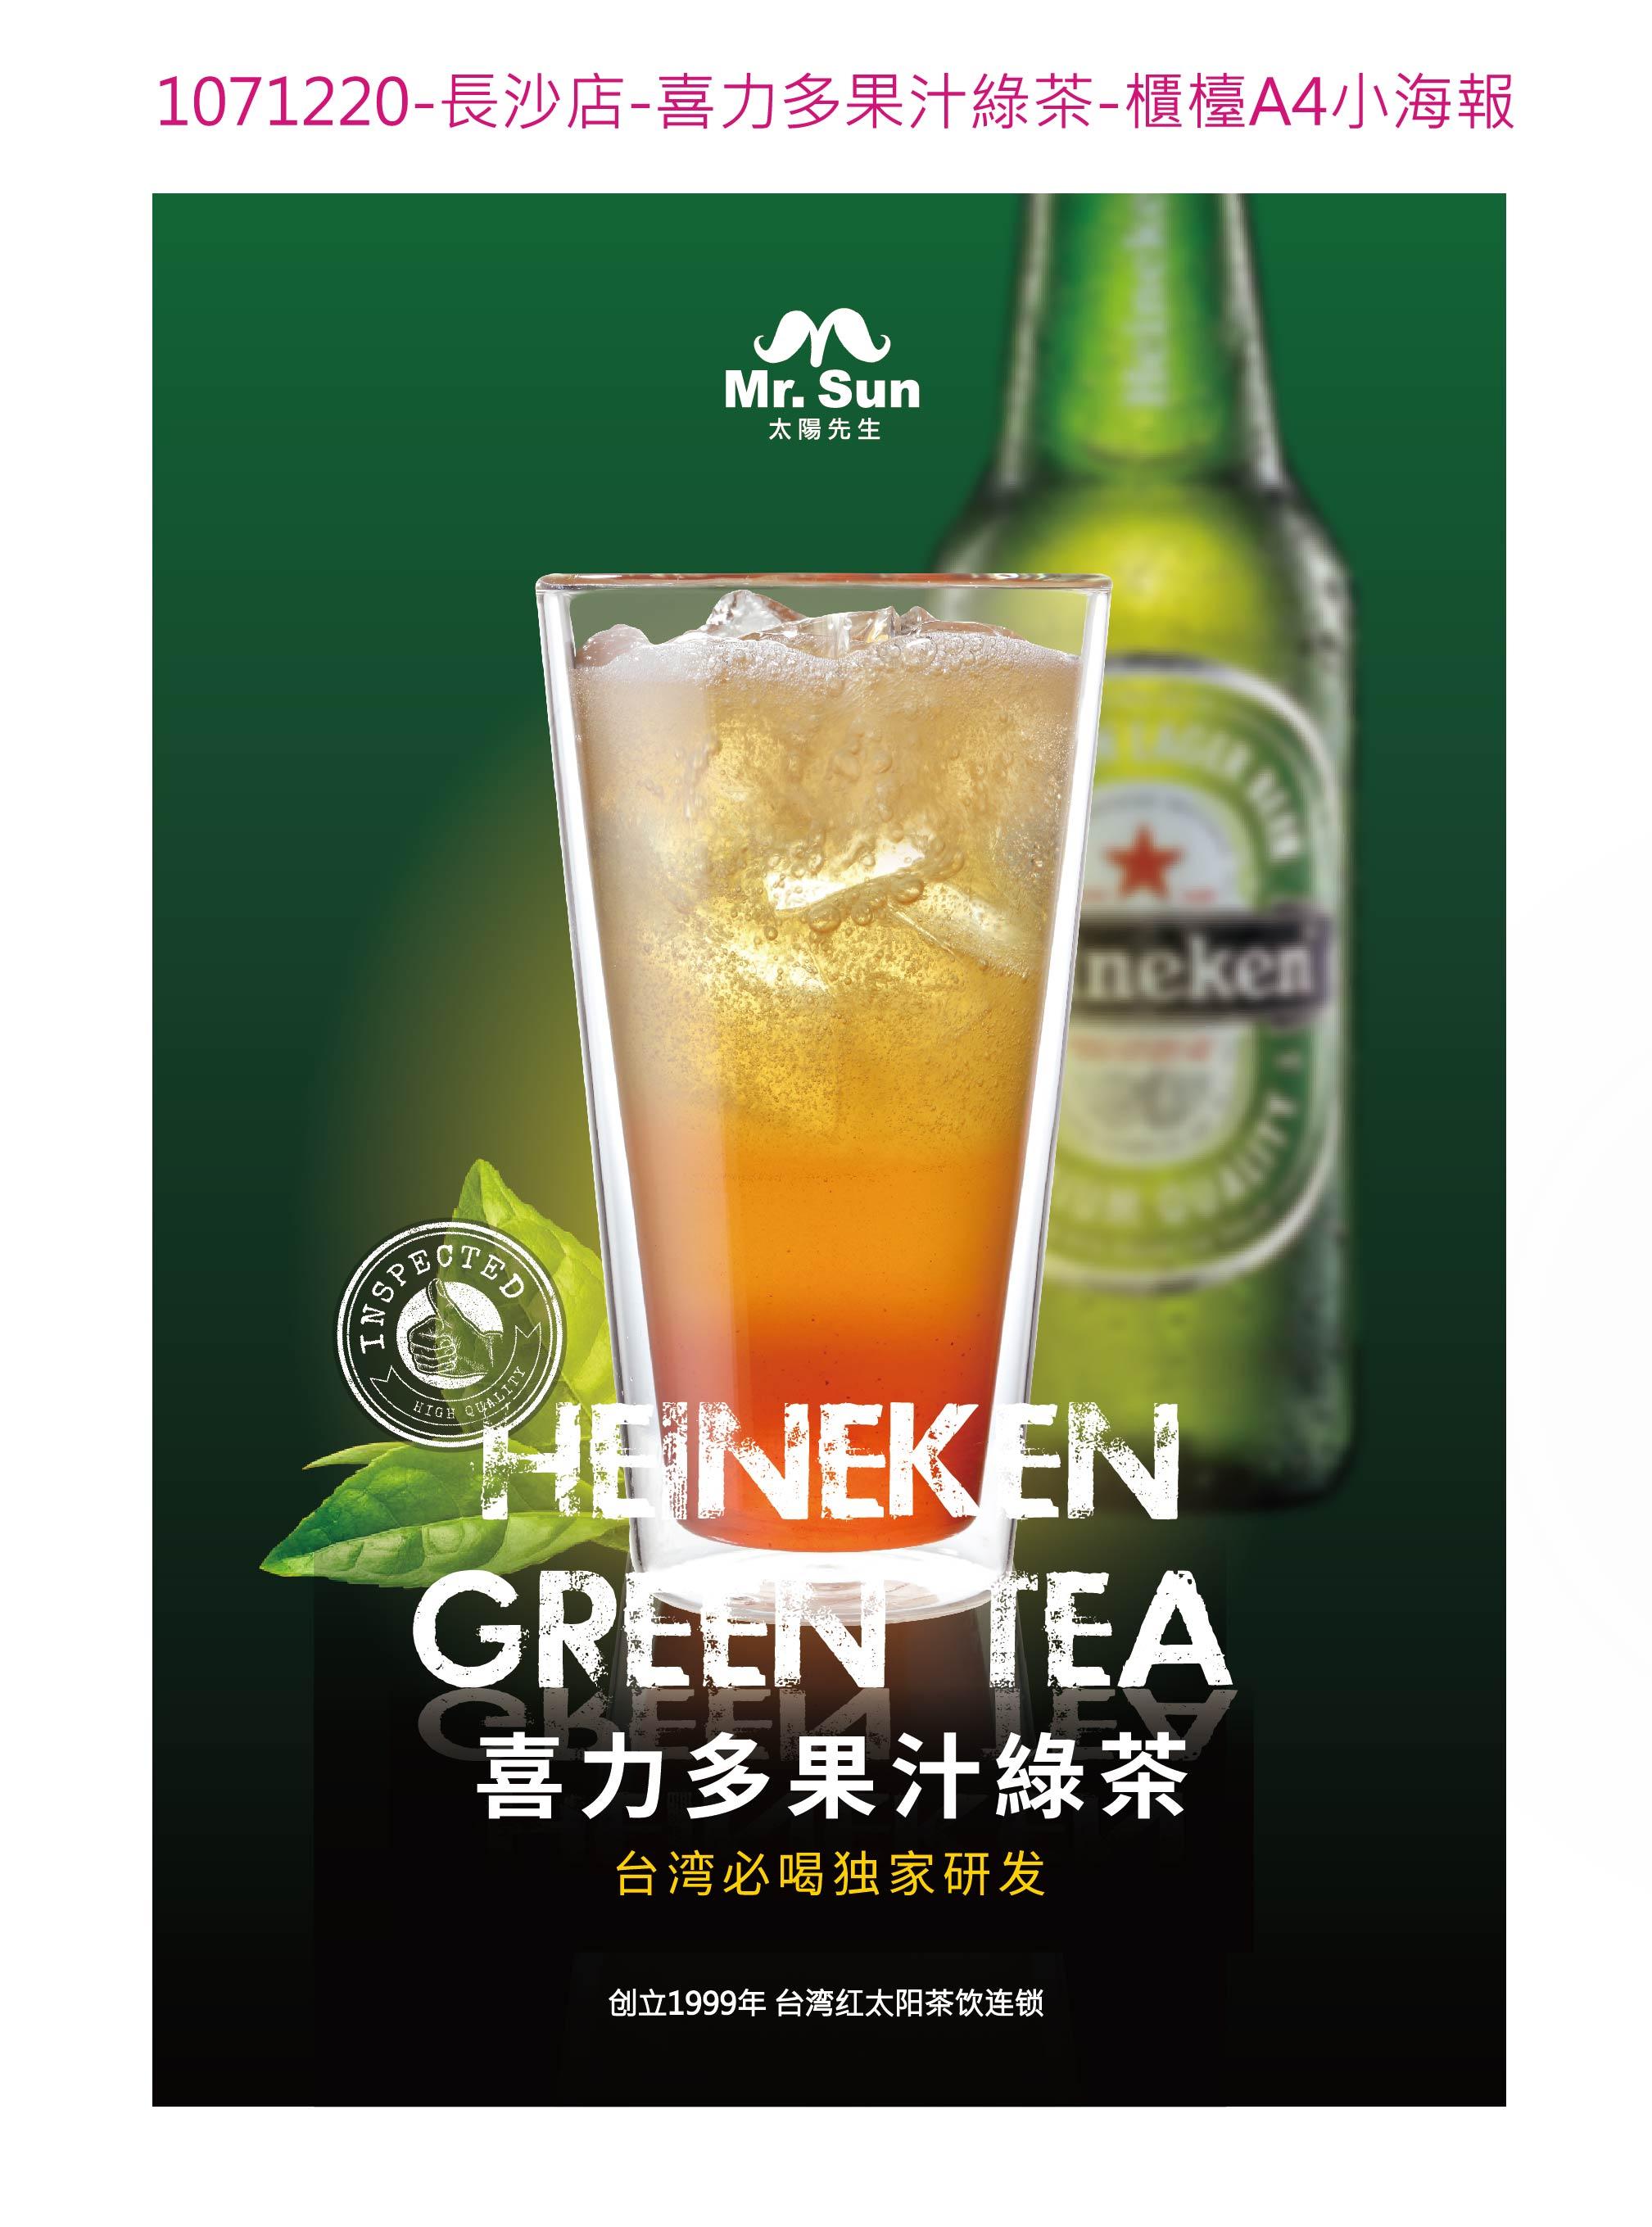 太阳先生奶茶——喜力多果汁绿茶